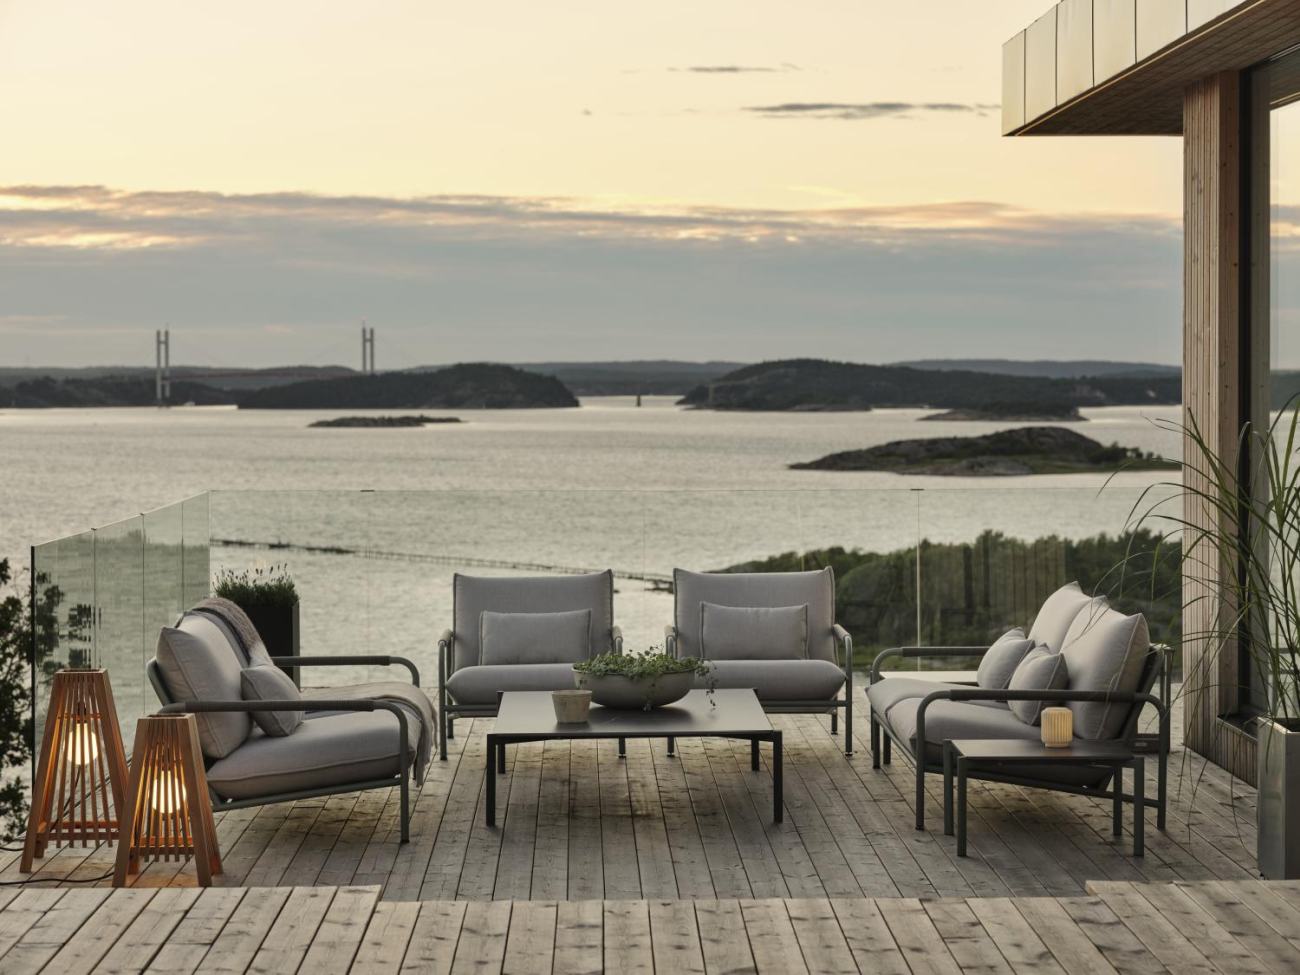 Der Gartencouchtisch Gotland überzeugt mit seinem modernen Design. Gefertigt wurde die Tischplatte aus Granit und besitzt einen grauen Farbton. Das Gestell ist auch aus Metall und hat eine Schwarze Farbe. Der Tisch besitzt eine Länger von 162 cm.